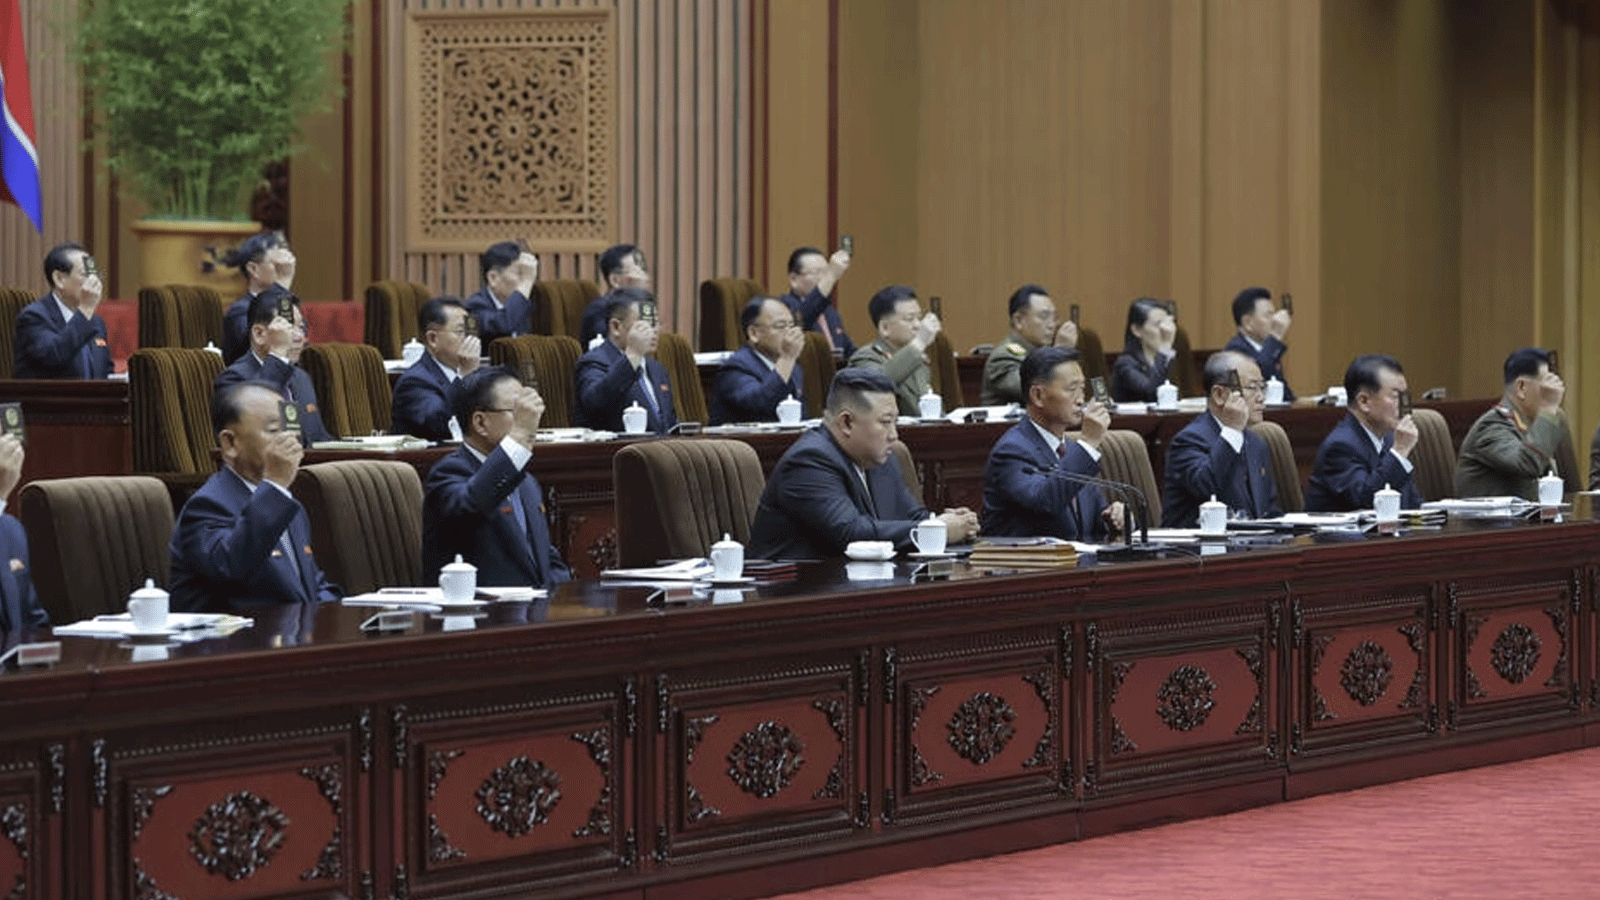  الزعيم كيم جونغ أون (وسط الصف الأول) خلال اجتماع مجلس الشعب في بيونغ يانغ